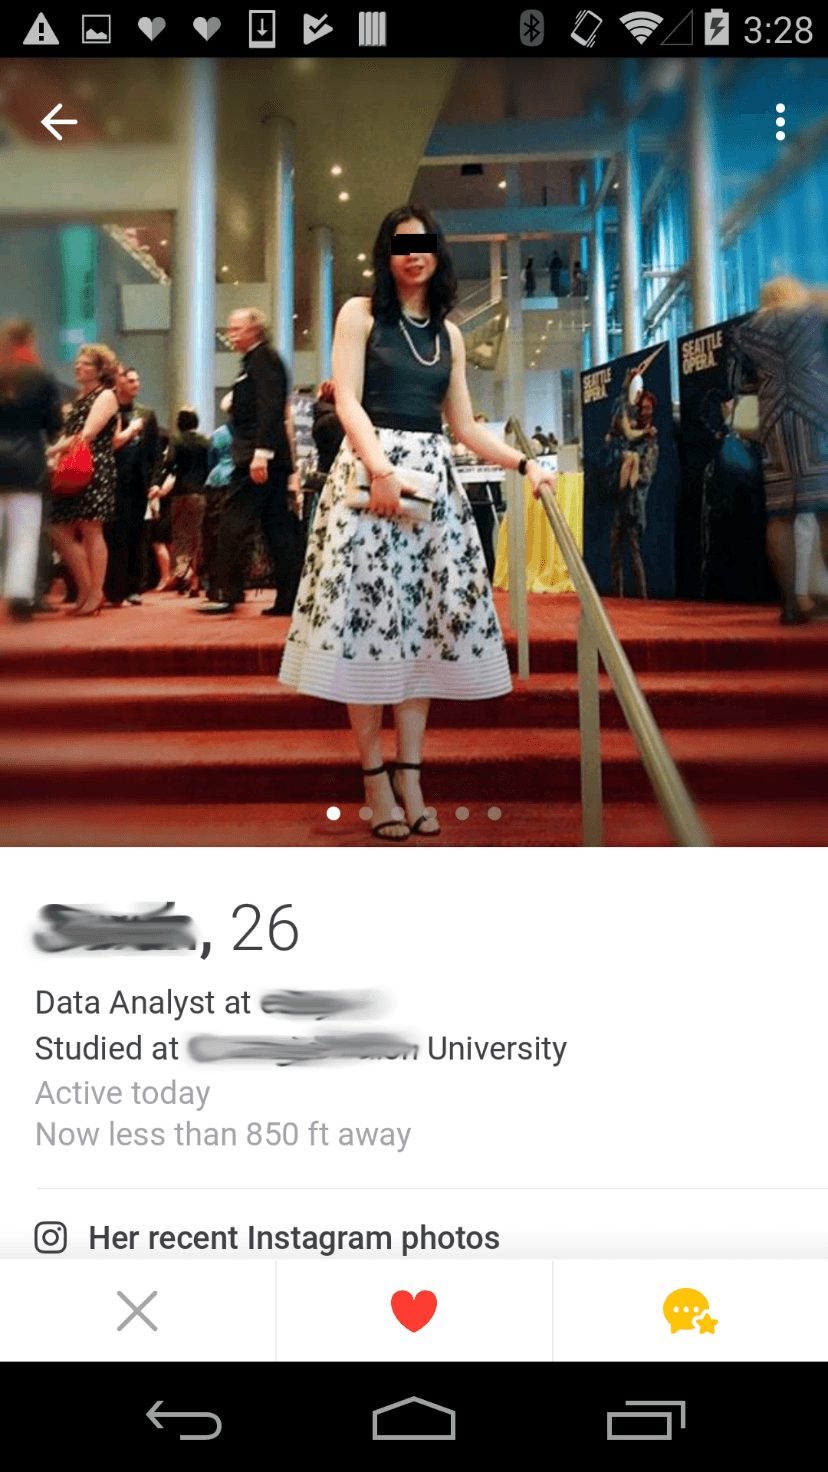 Tinder dating app user information